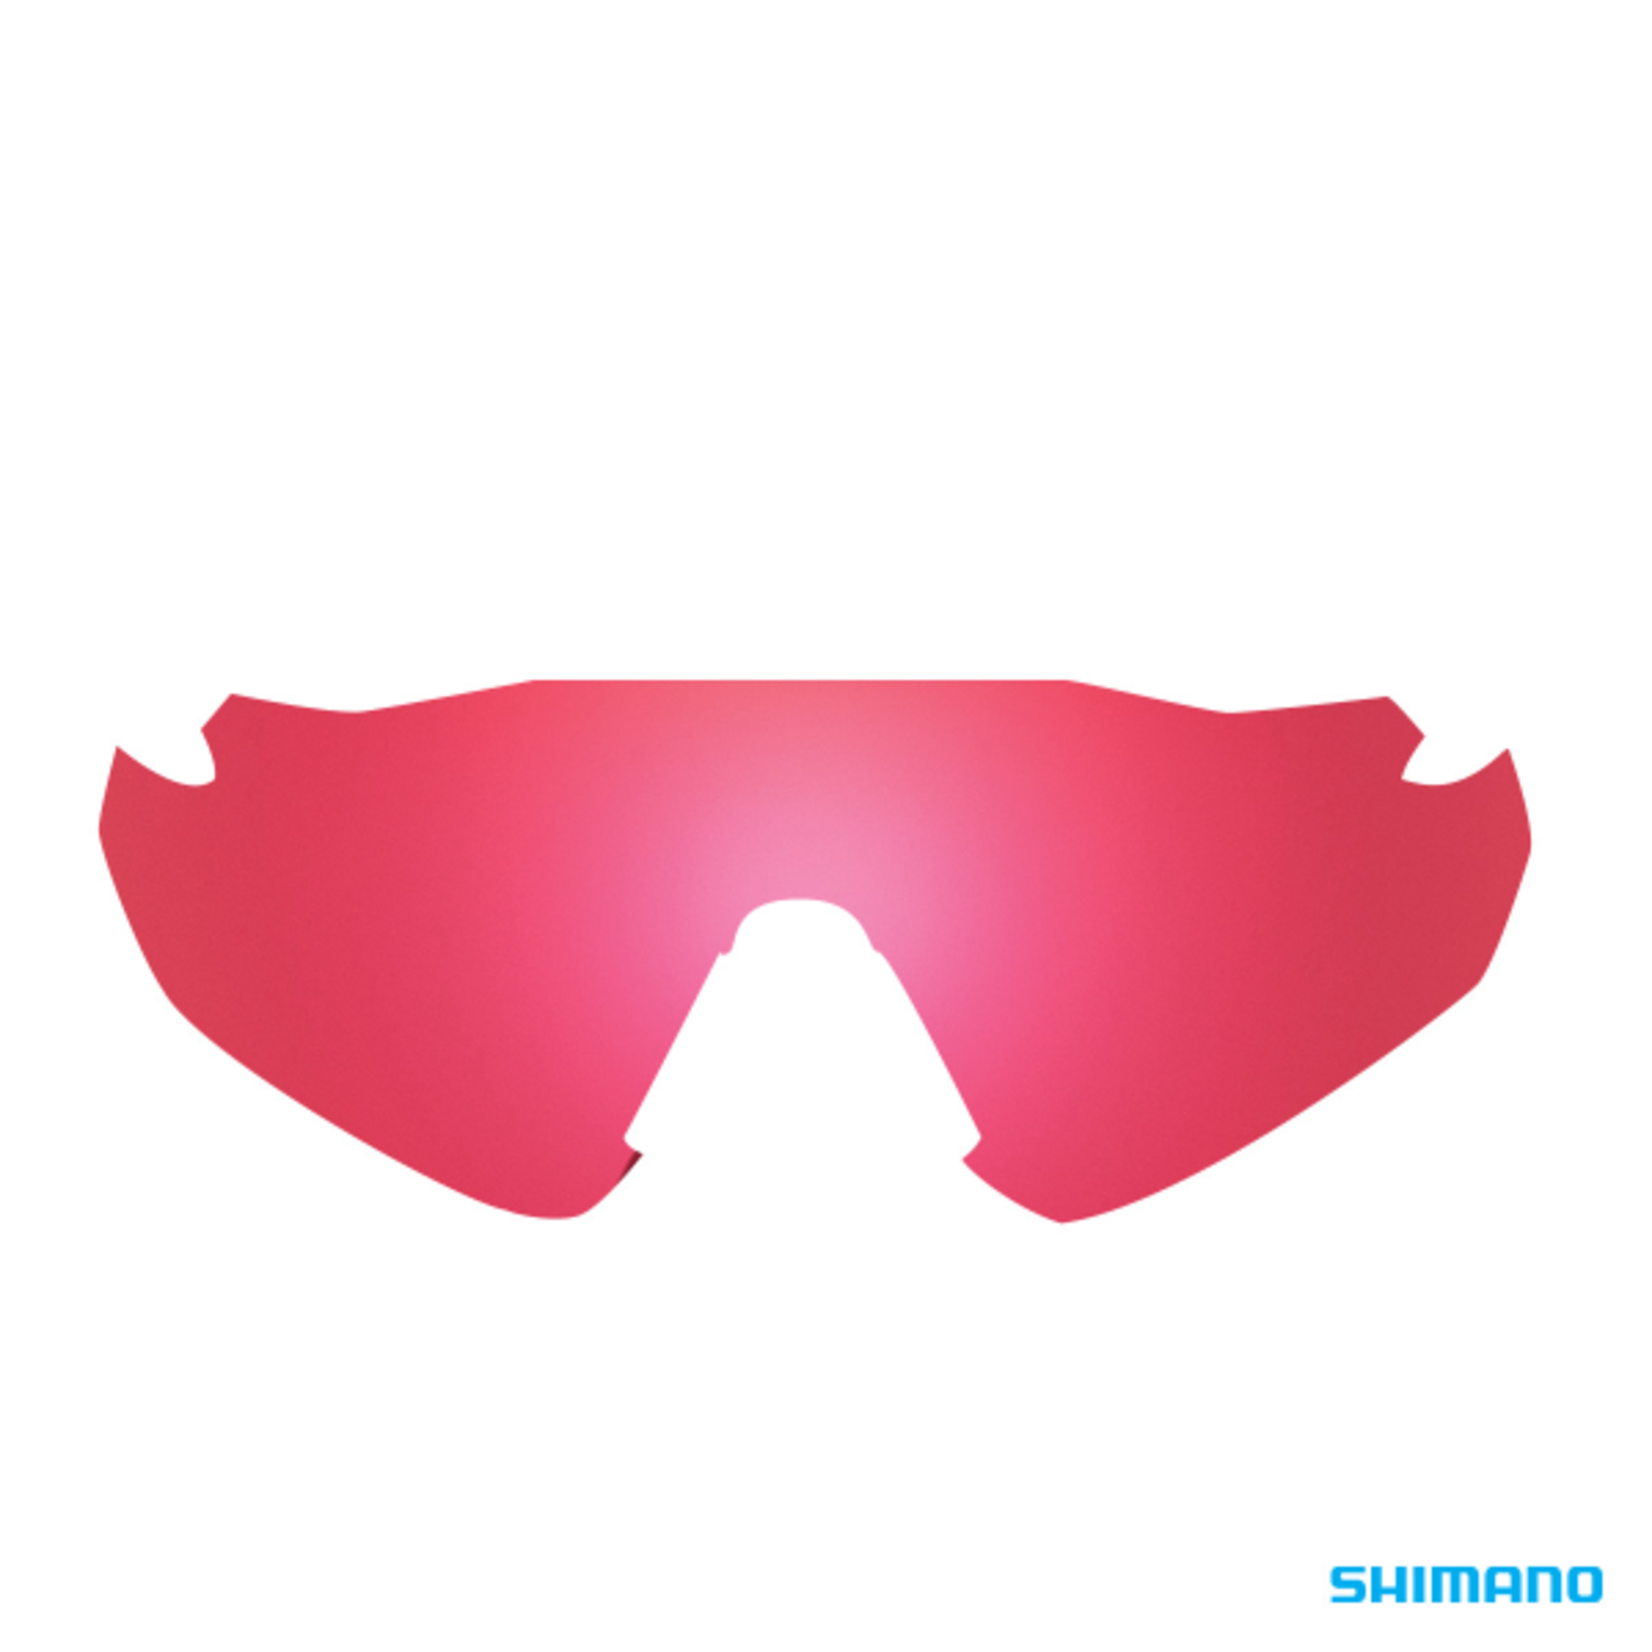 Shimano Shimano Eyewear Spare Lens - Equinox 4 Eqnx4 - Ridescape Road